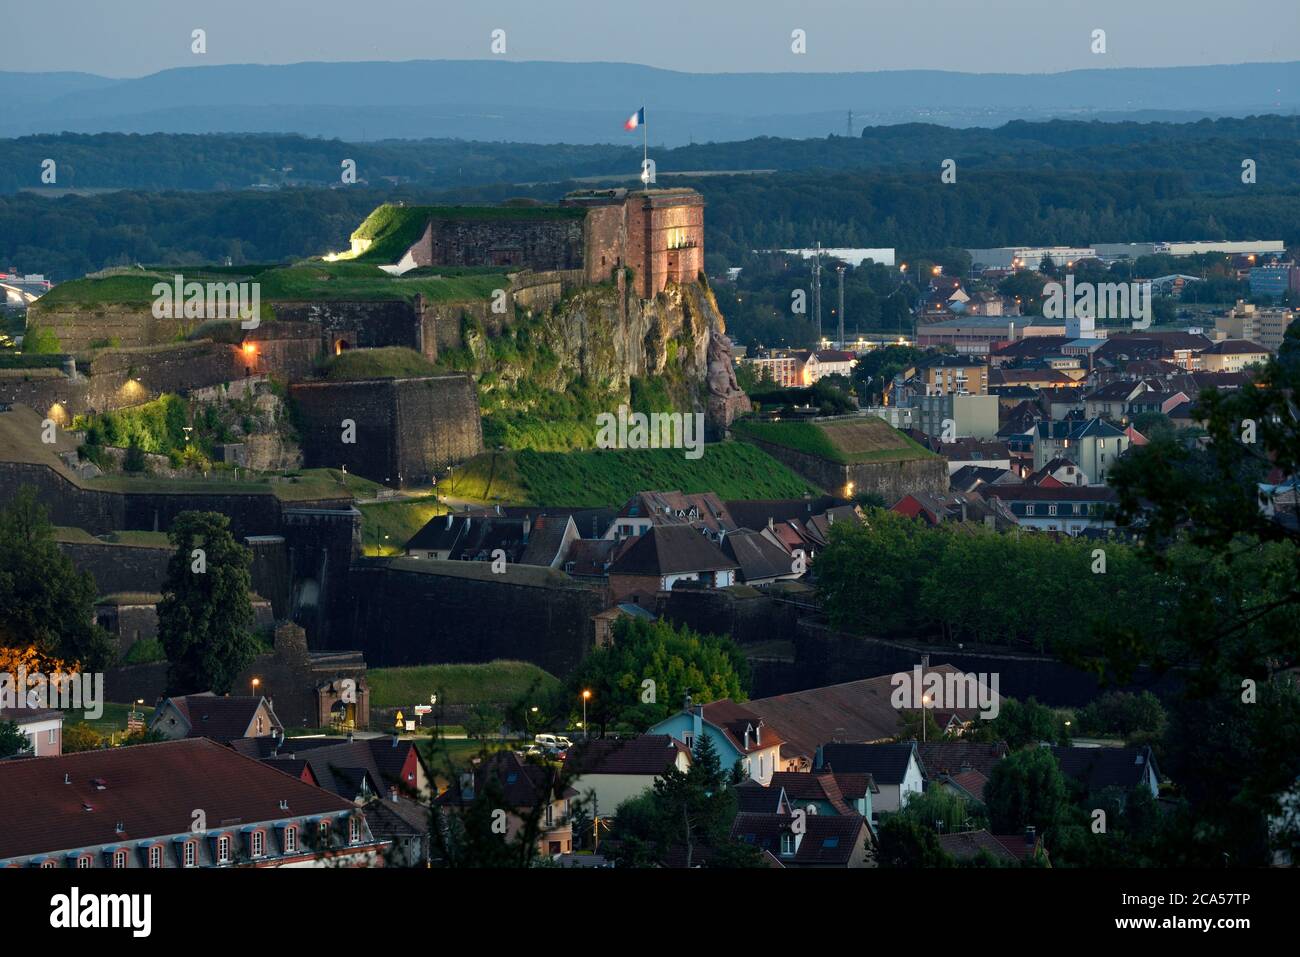 France, Territoire de Belfort, Belfort, citadel, castle, the Lion from ...